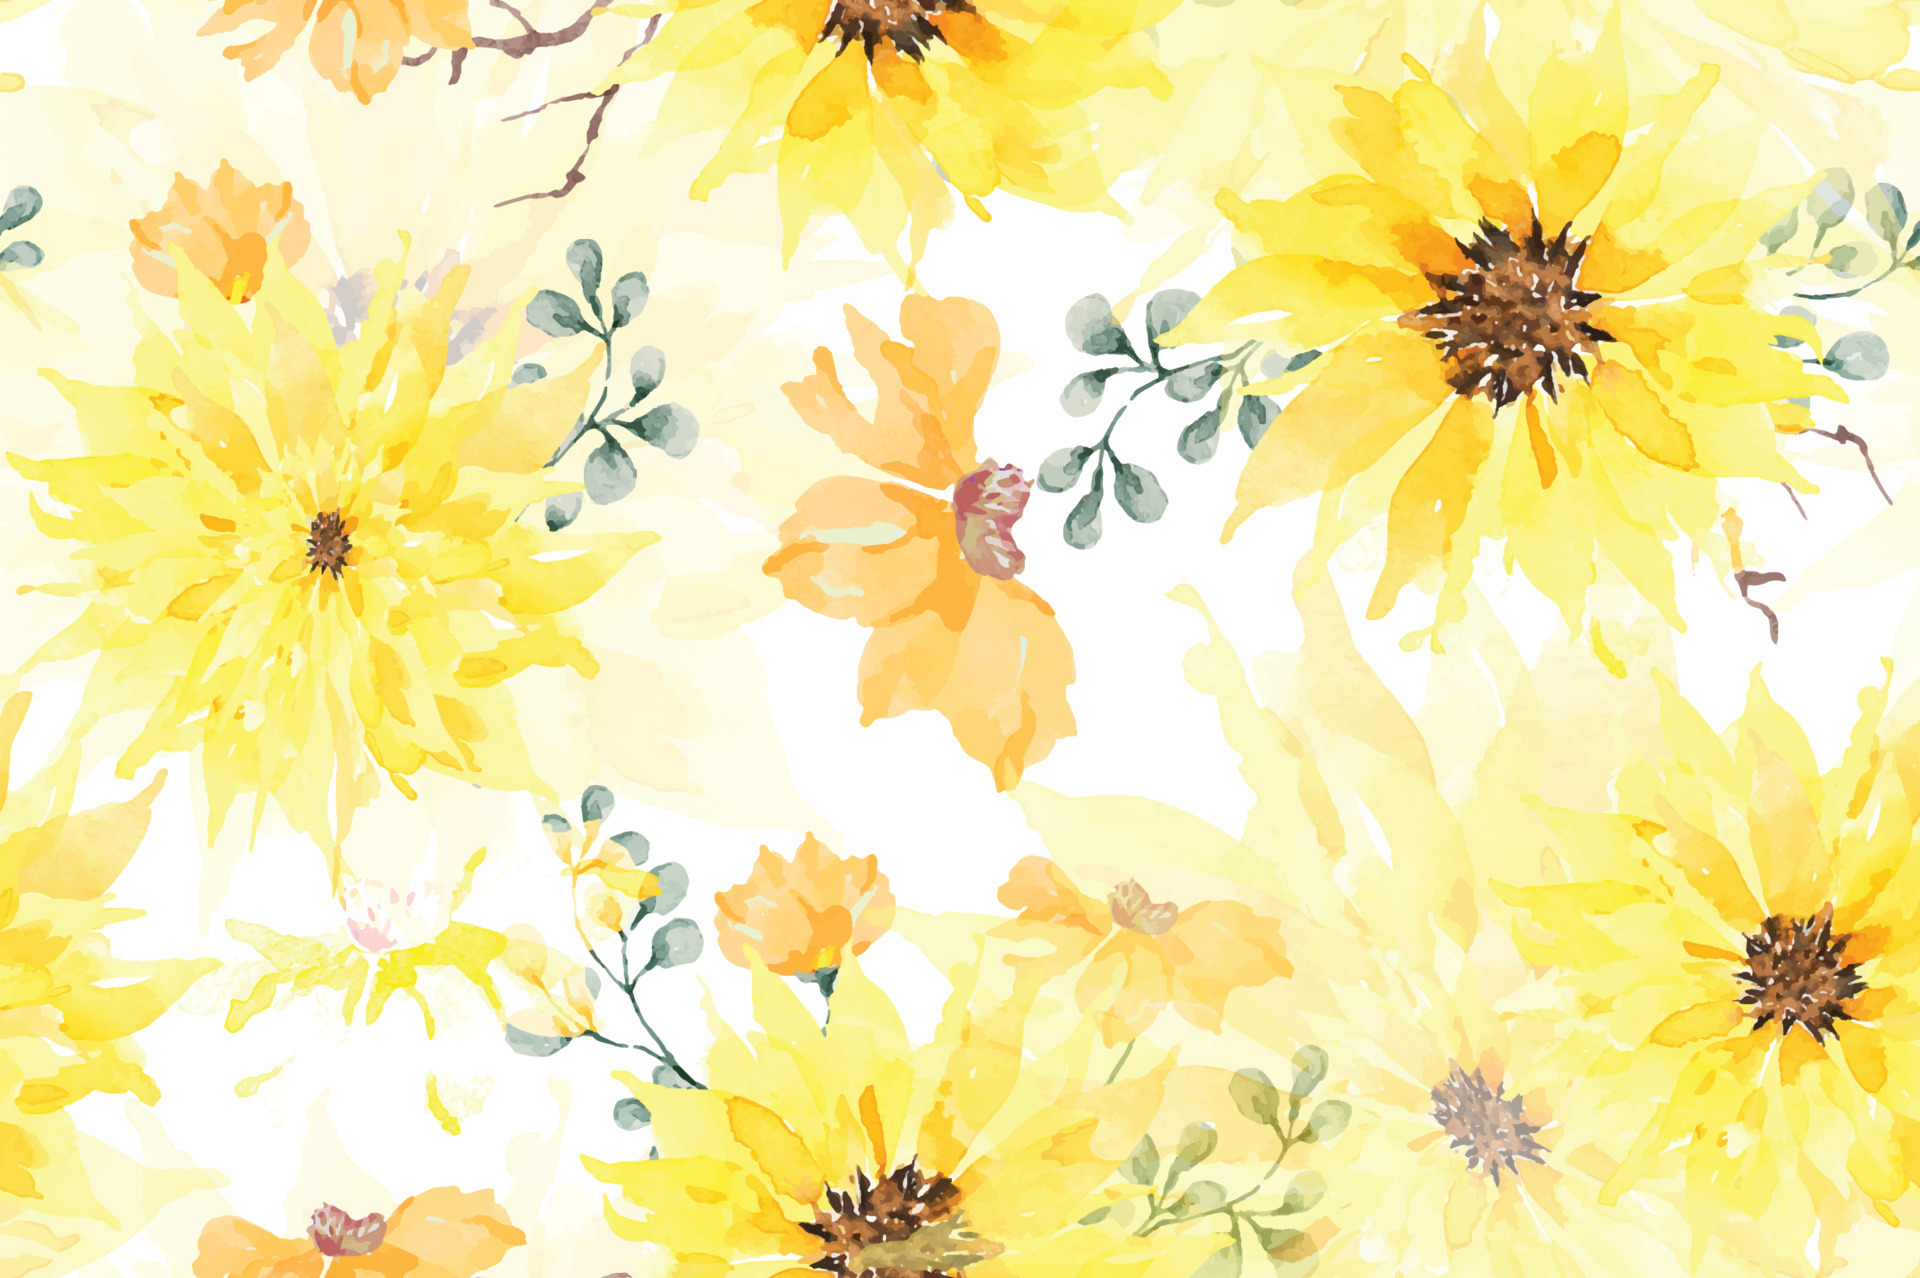 Hoa hướng dương với những cánh hoa vàng rực rỡ như ánh mặt trời, tỏa sáng giữa không gian cô độc và ảm đạm. Bức ảnh này sẽ khiến bạn cảm thấy đầy năng lượng và lạc quan.